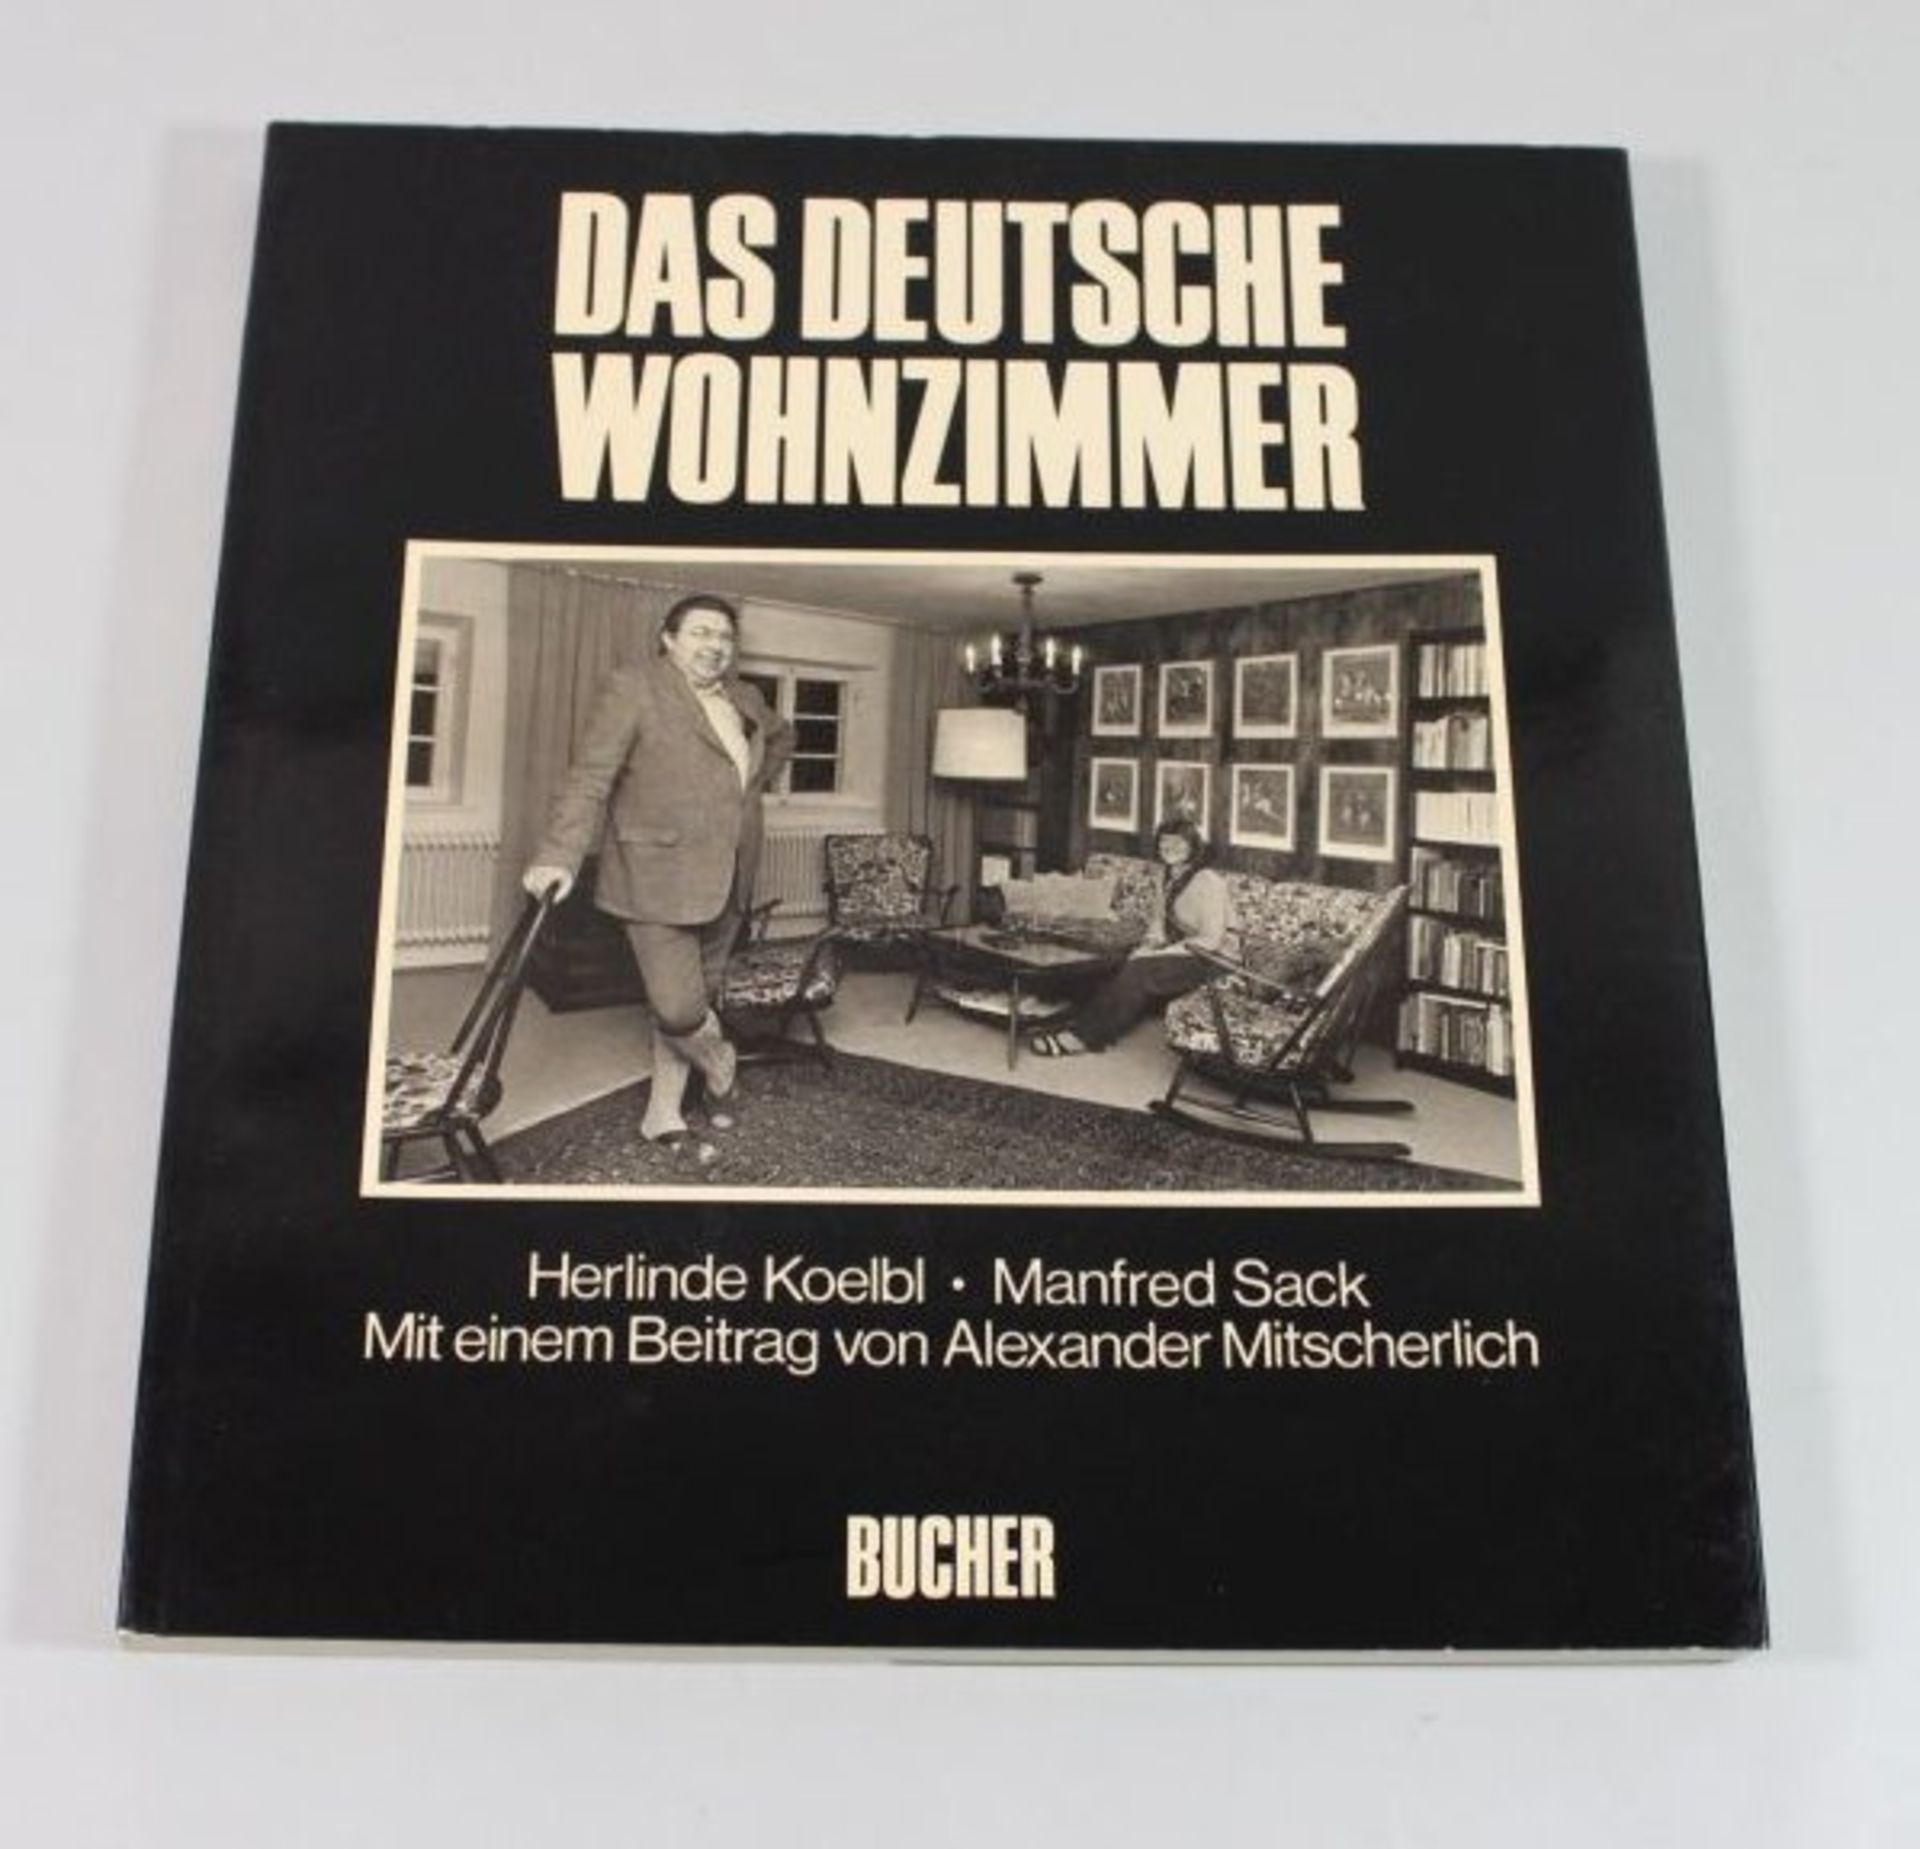 Das Deutsche Wohnzimmer, 1980.